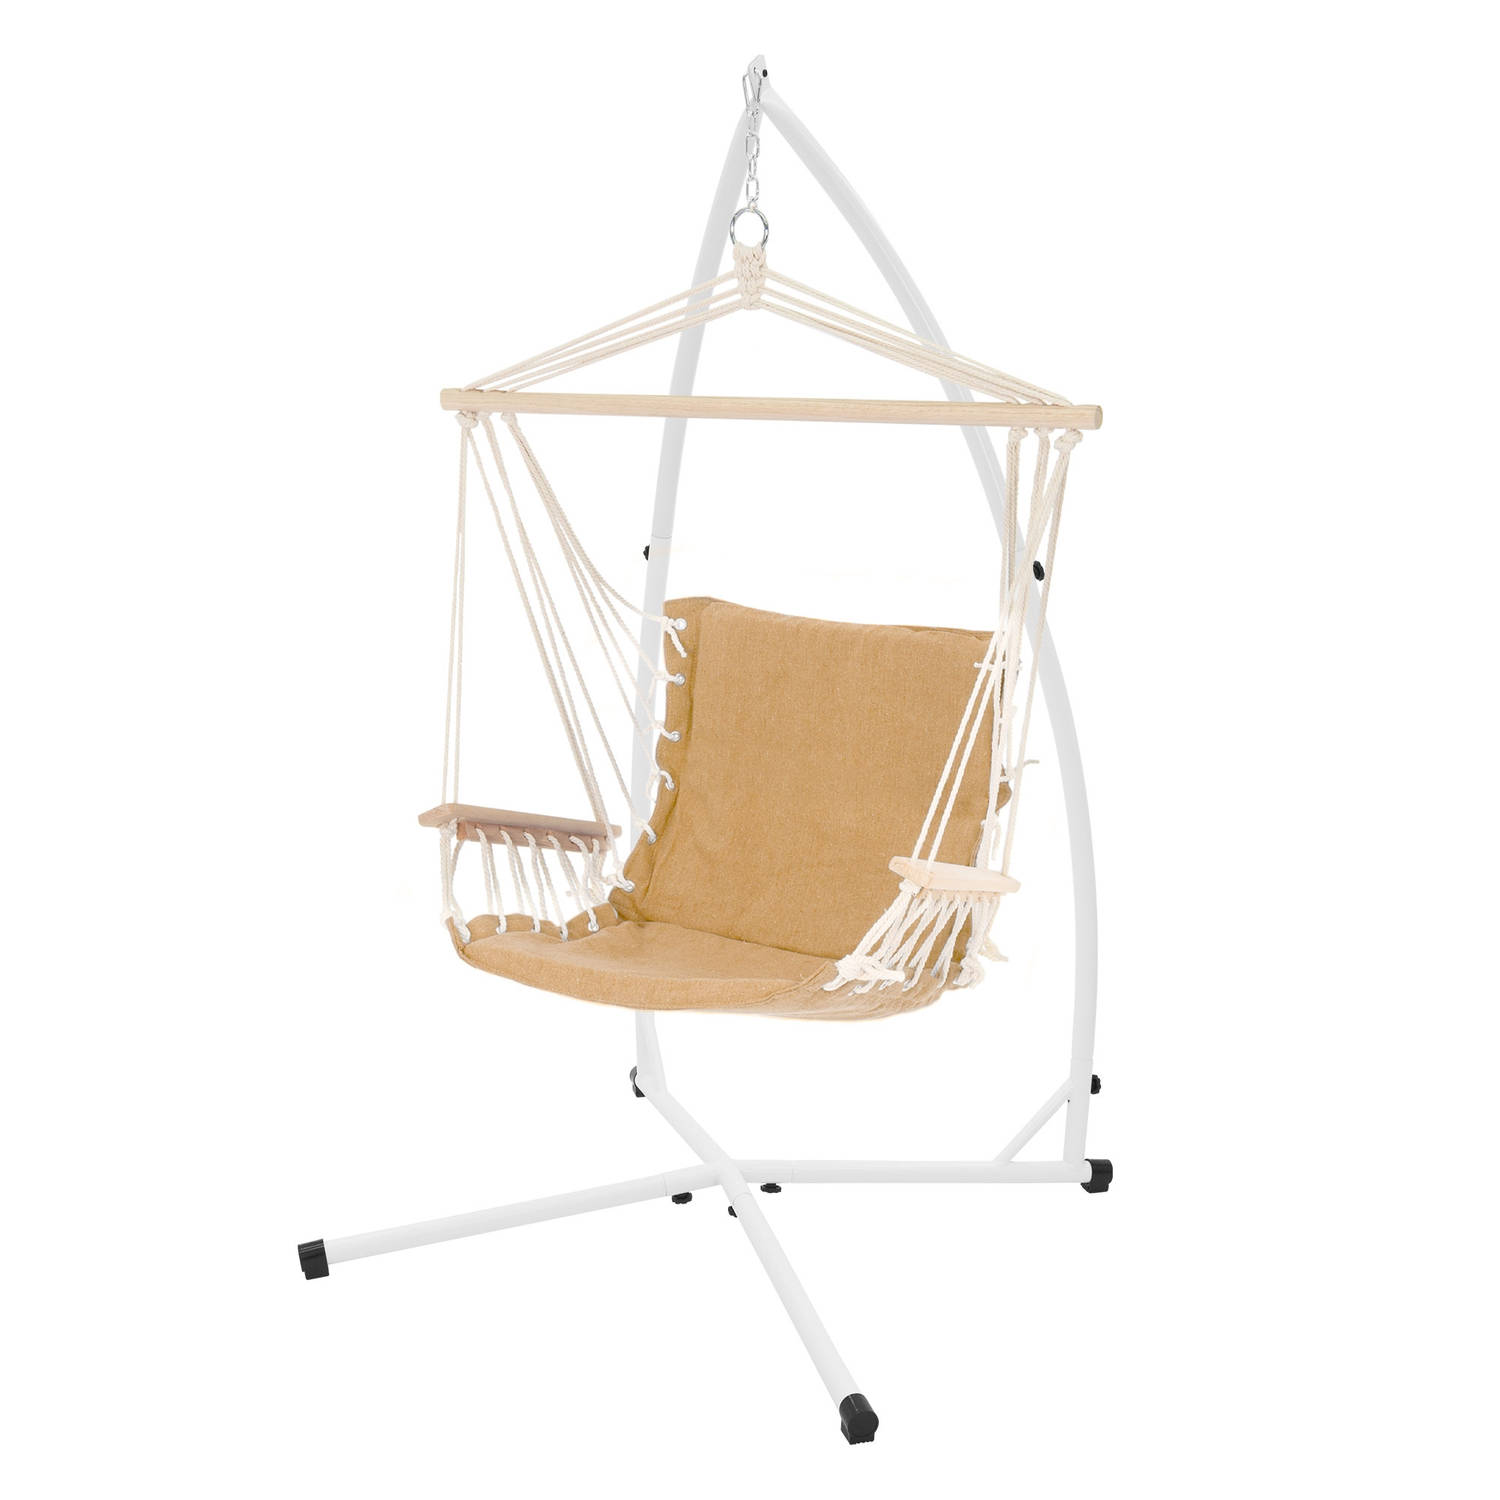 Hangstoel met zitkussen 45x100x46 cm Terra Cotta in katoen en hout tot 120 kg